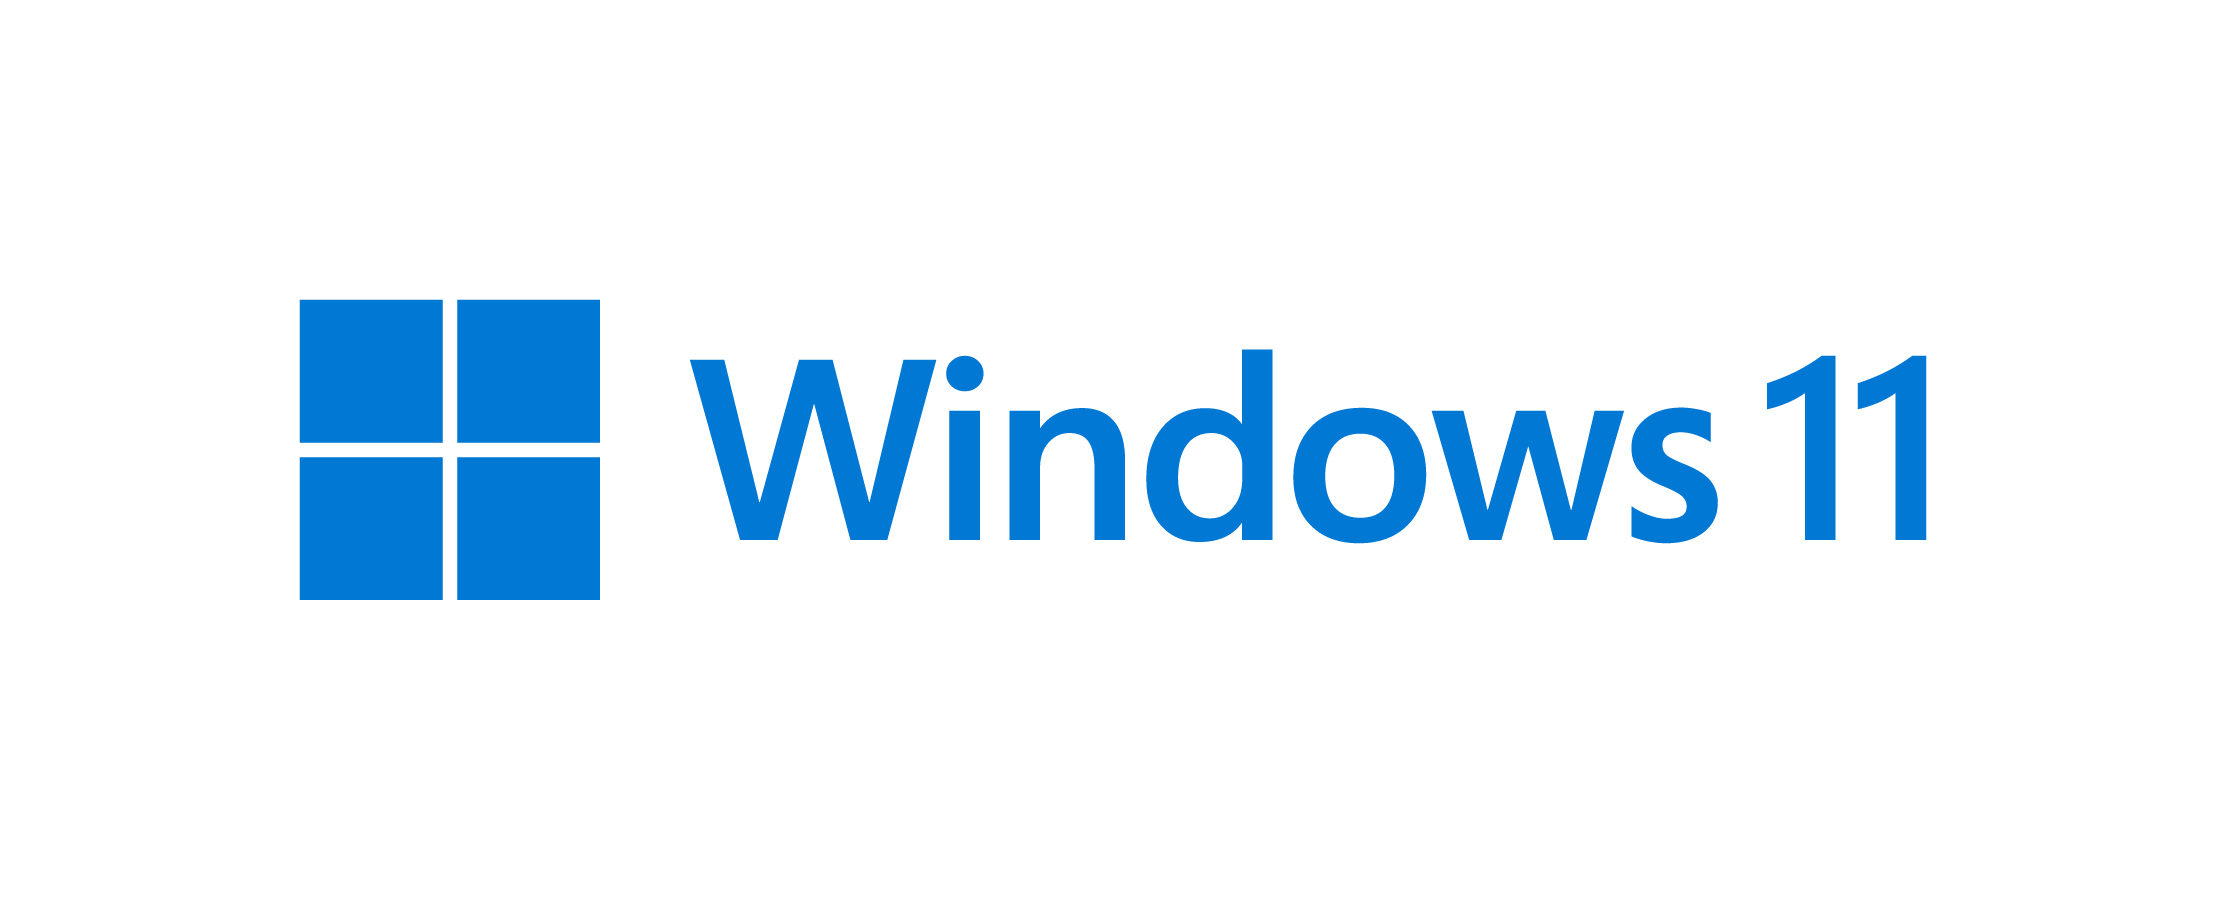 Microsoft Active Directory логотип. Логотип Windows Server 2019. Windows Server 2016 иконка. Виндовс сервер 2016. Archive directory